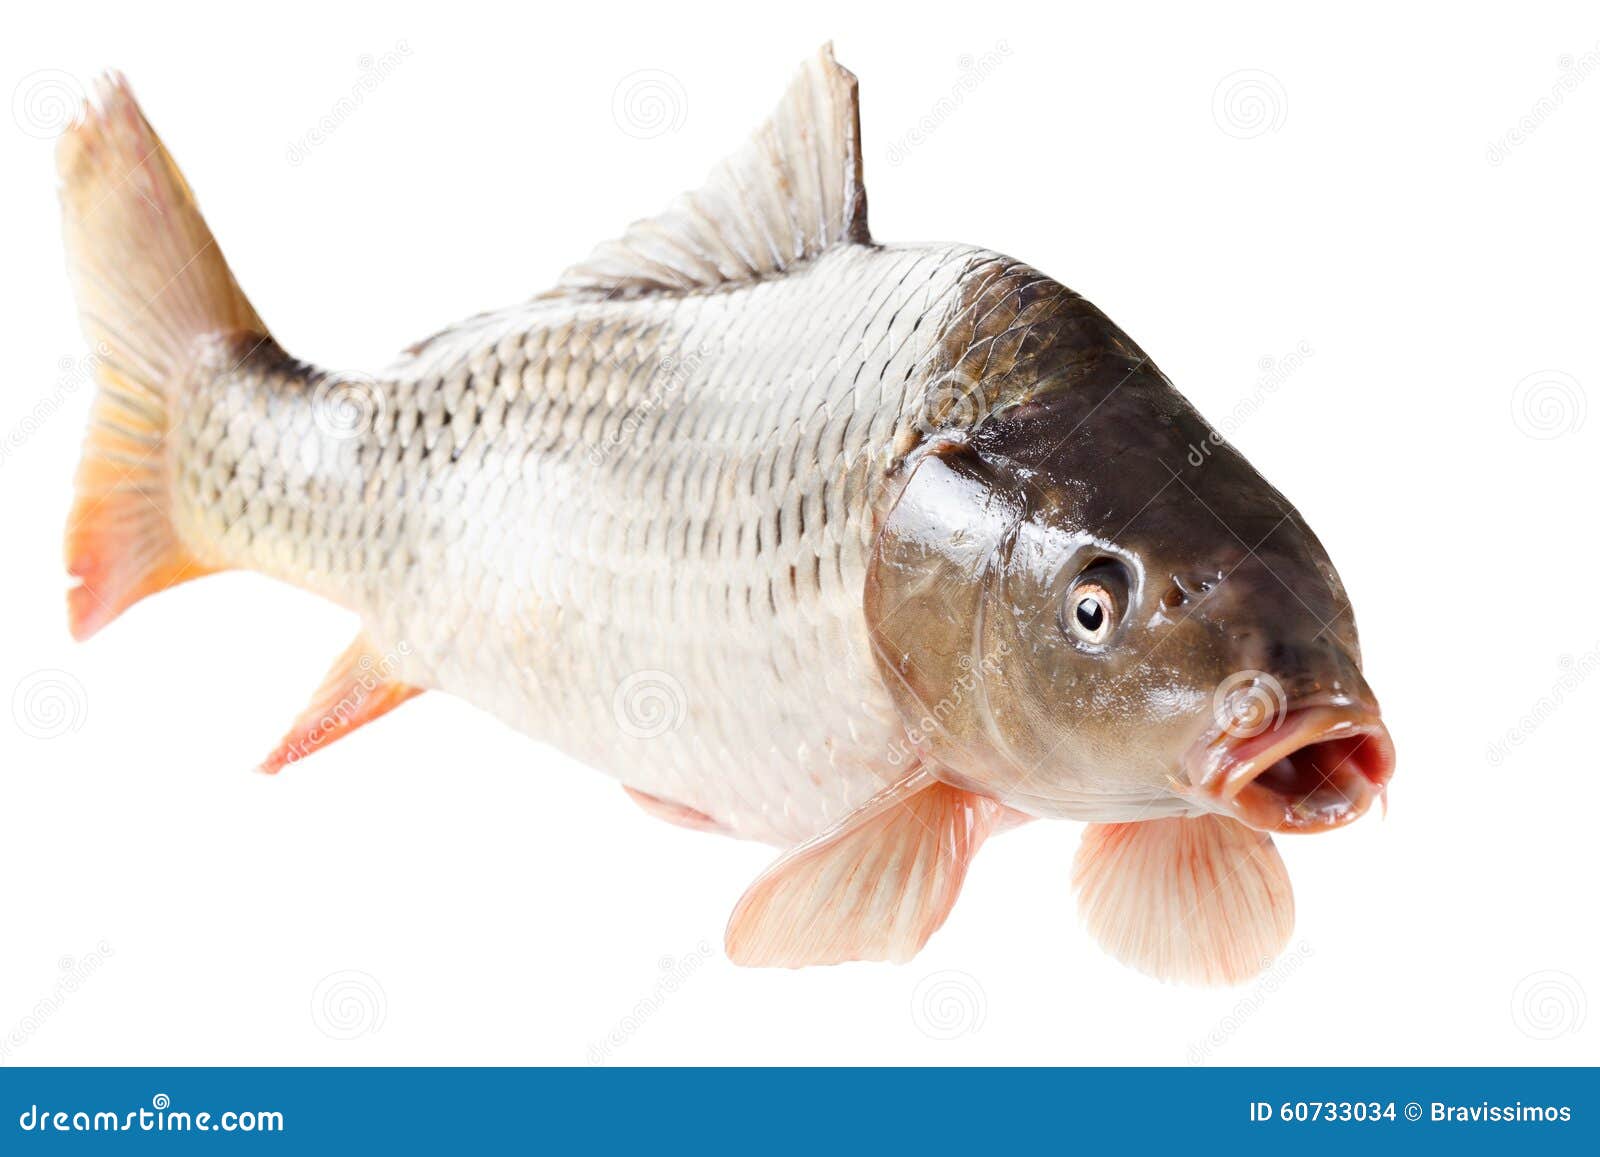 Common Carp Fish on White Background Stock Photo - Image of